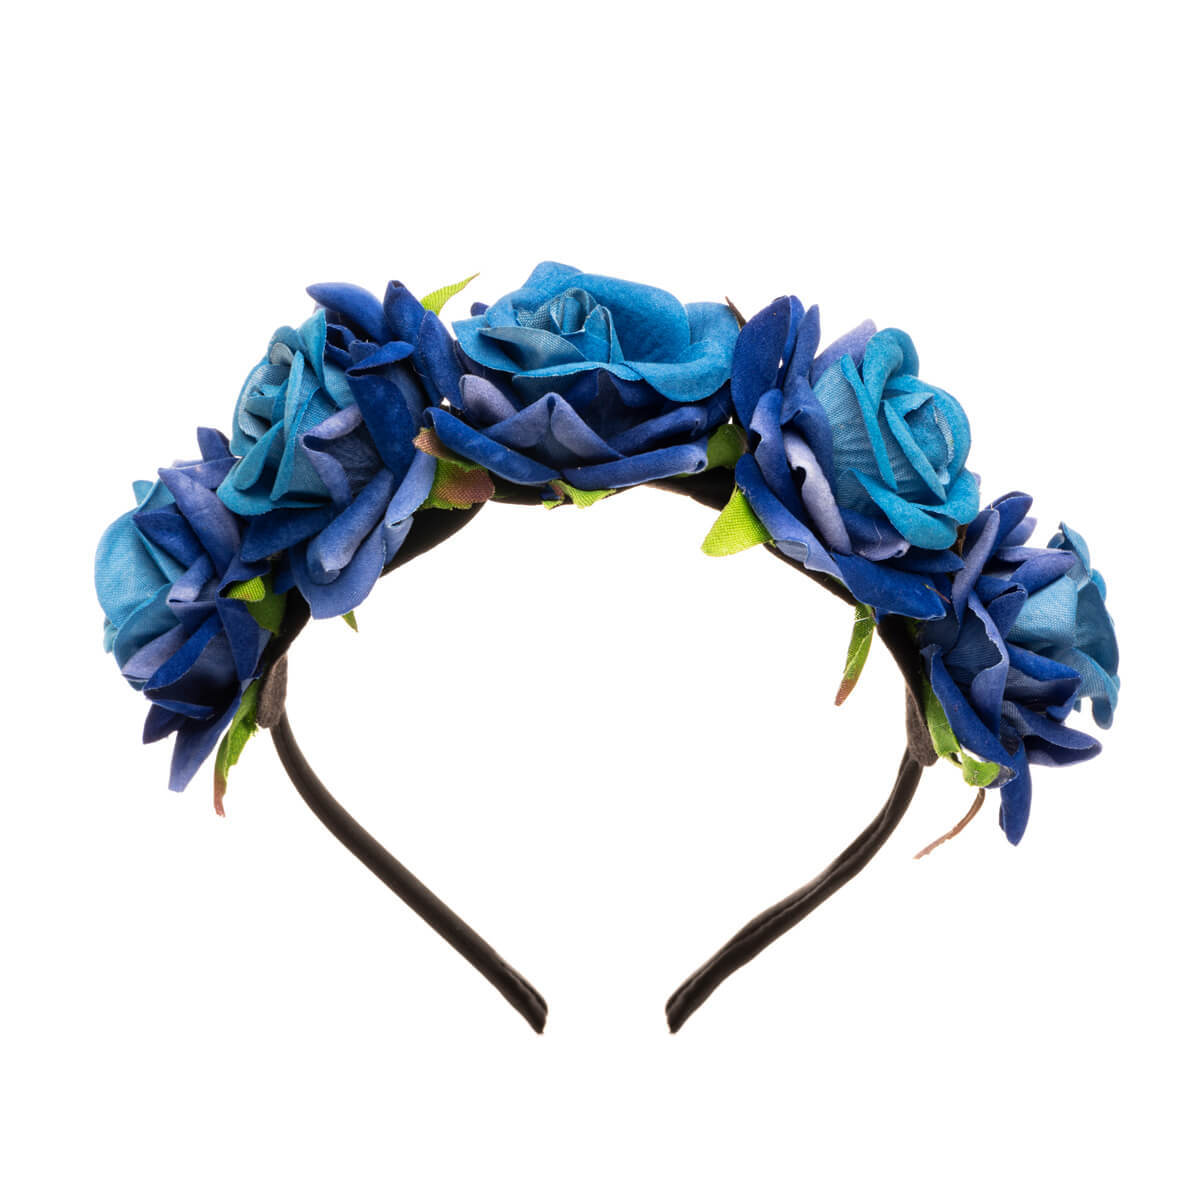 Rose flower hairband flower collar